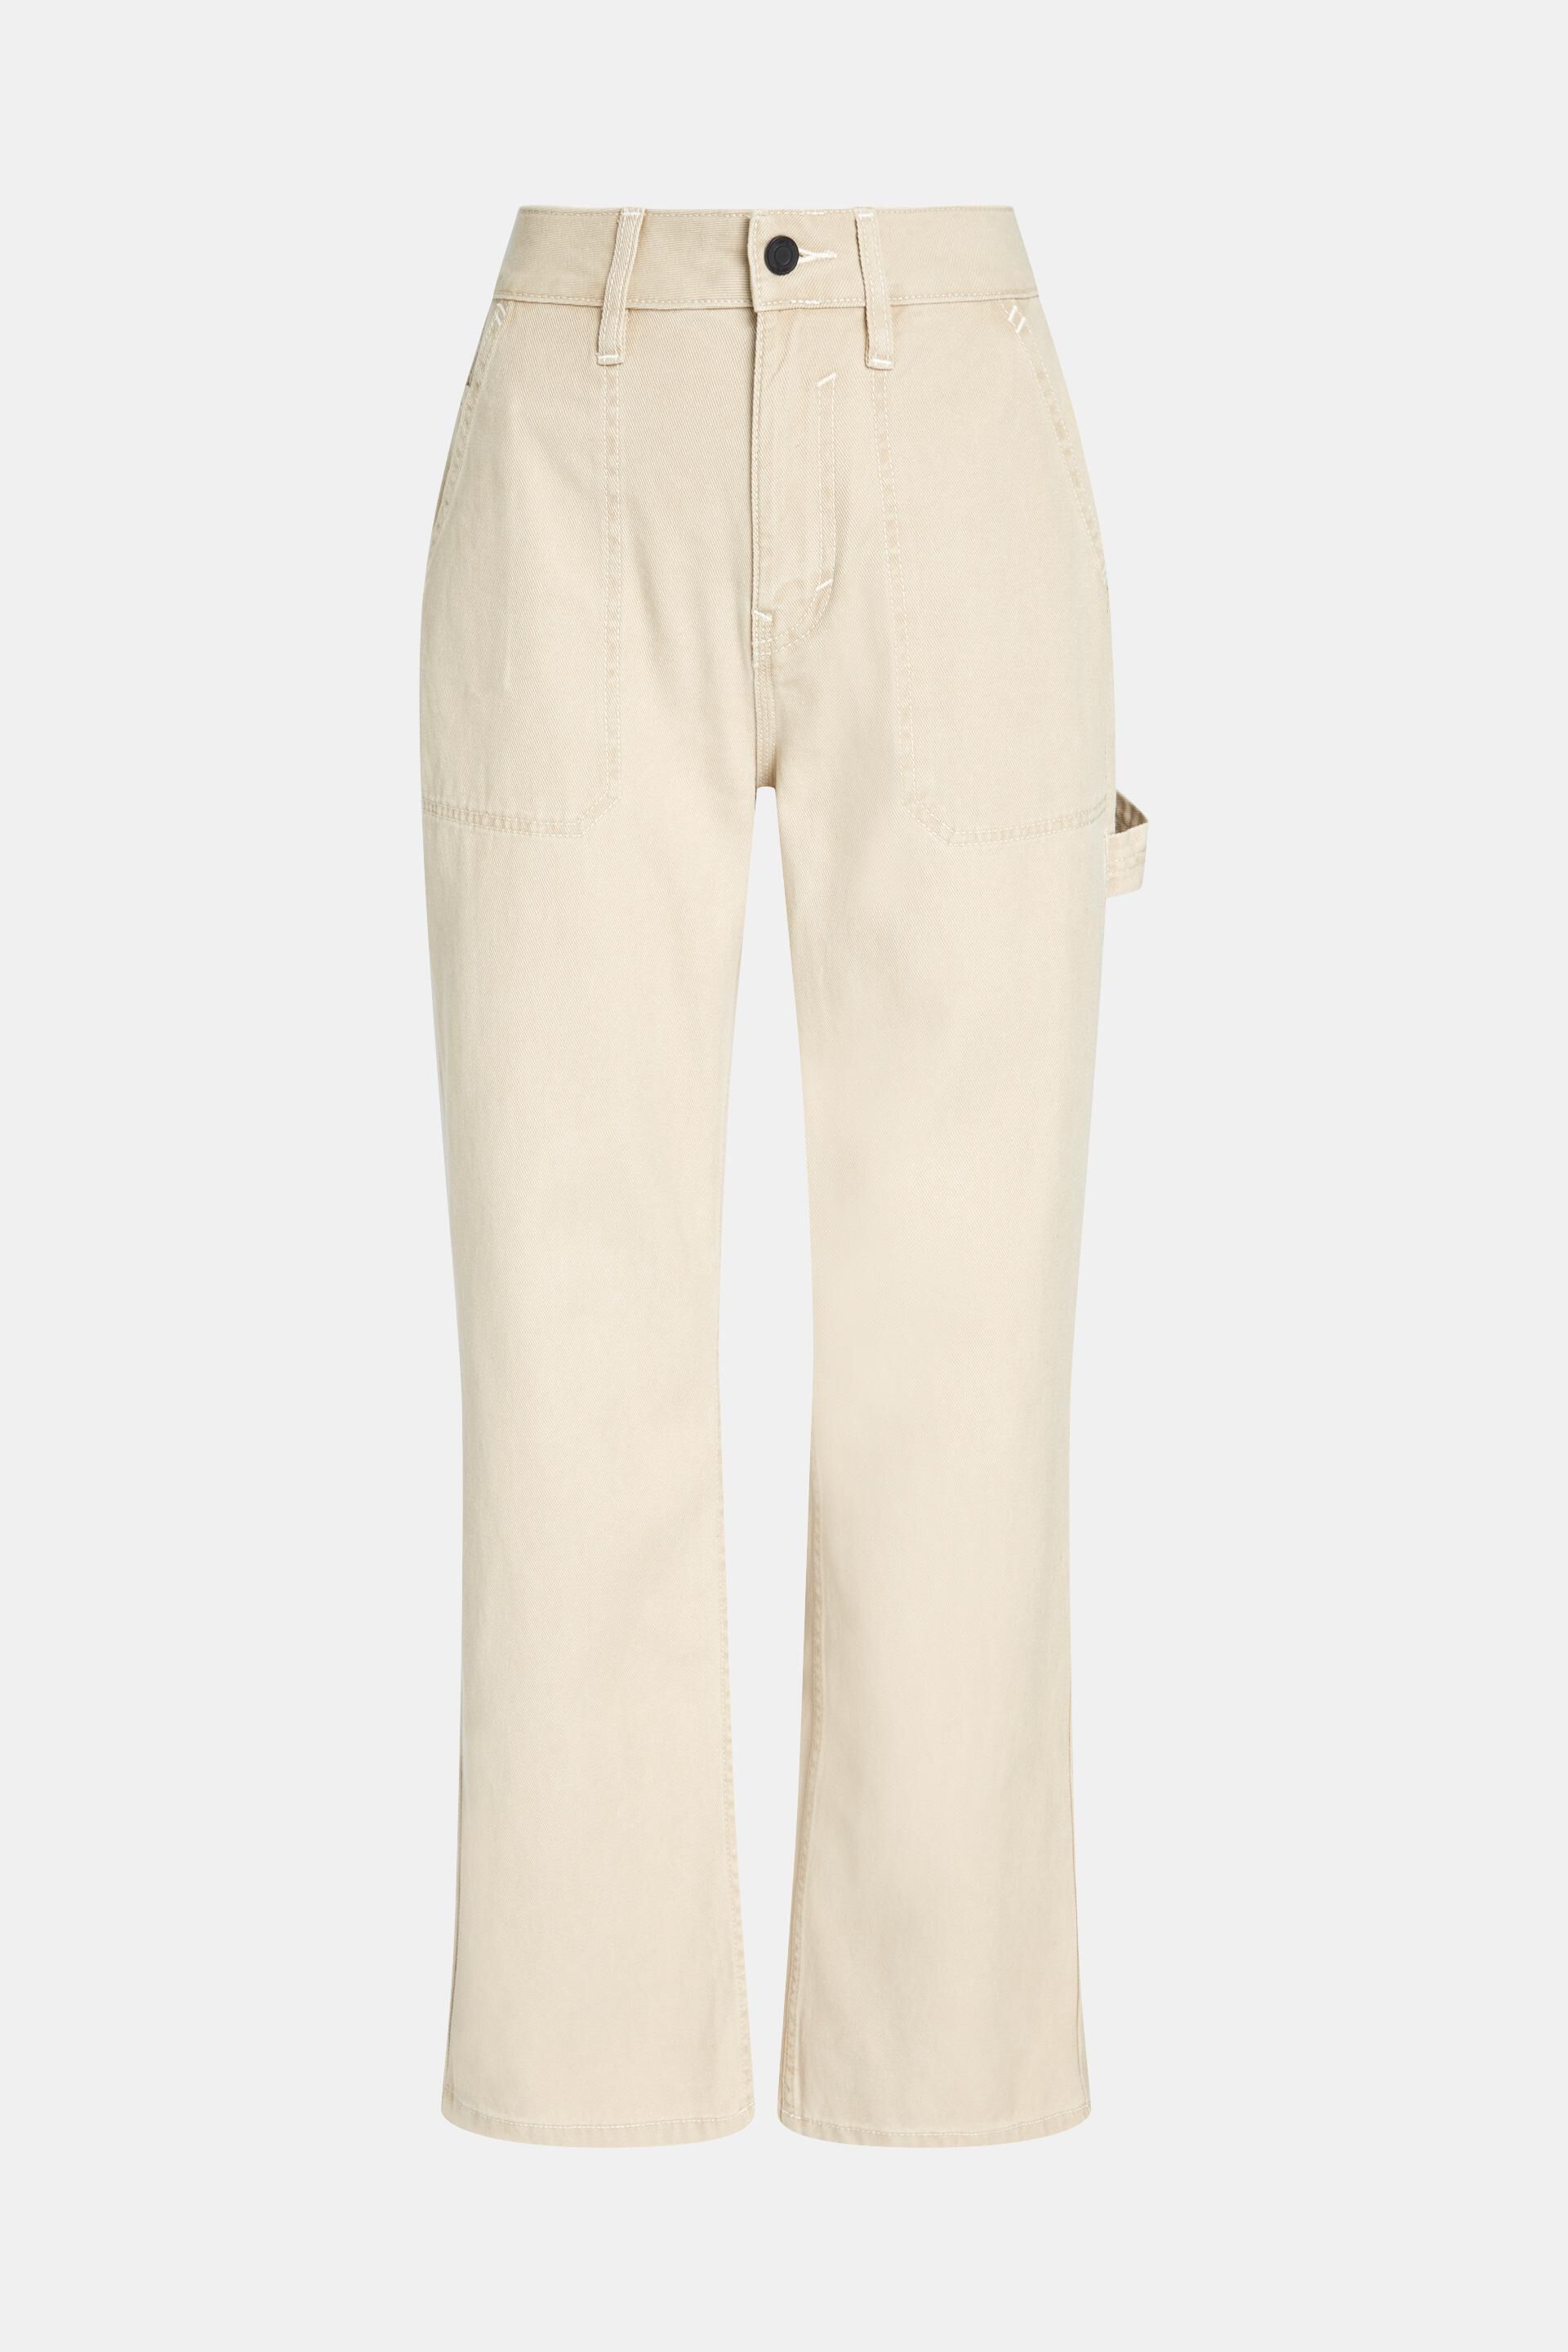 Esprit geradem Workwear-Jeans Bund mit Bein im und hohem 90er-Jahre-Stil